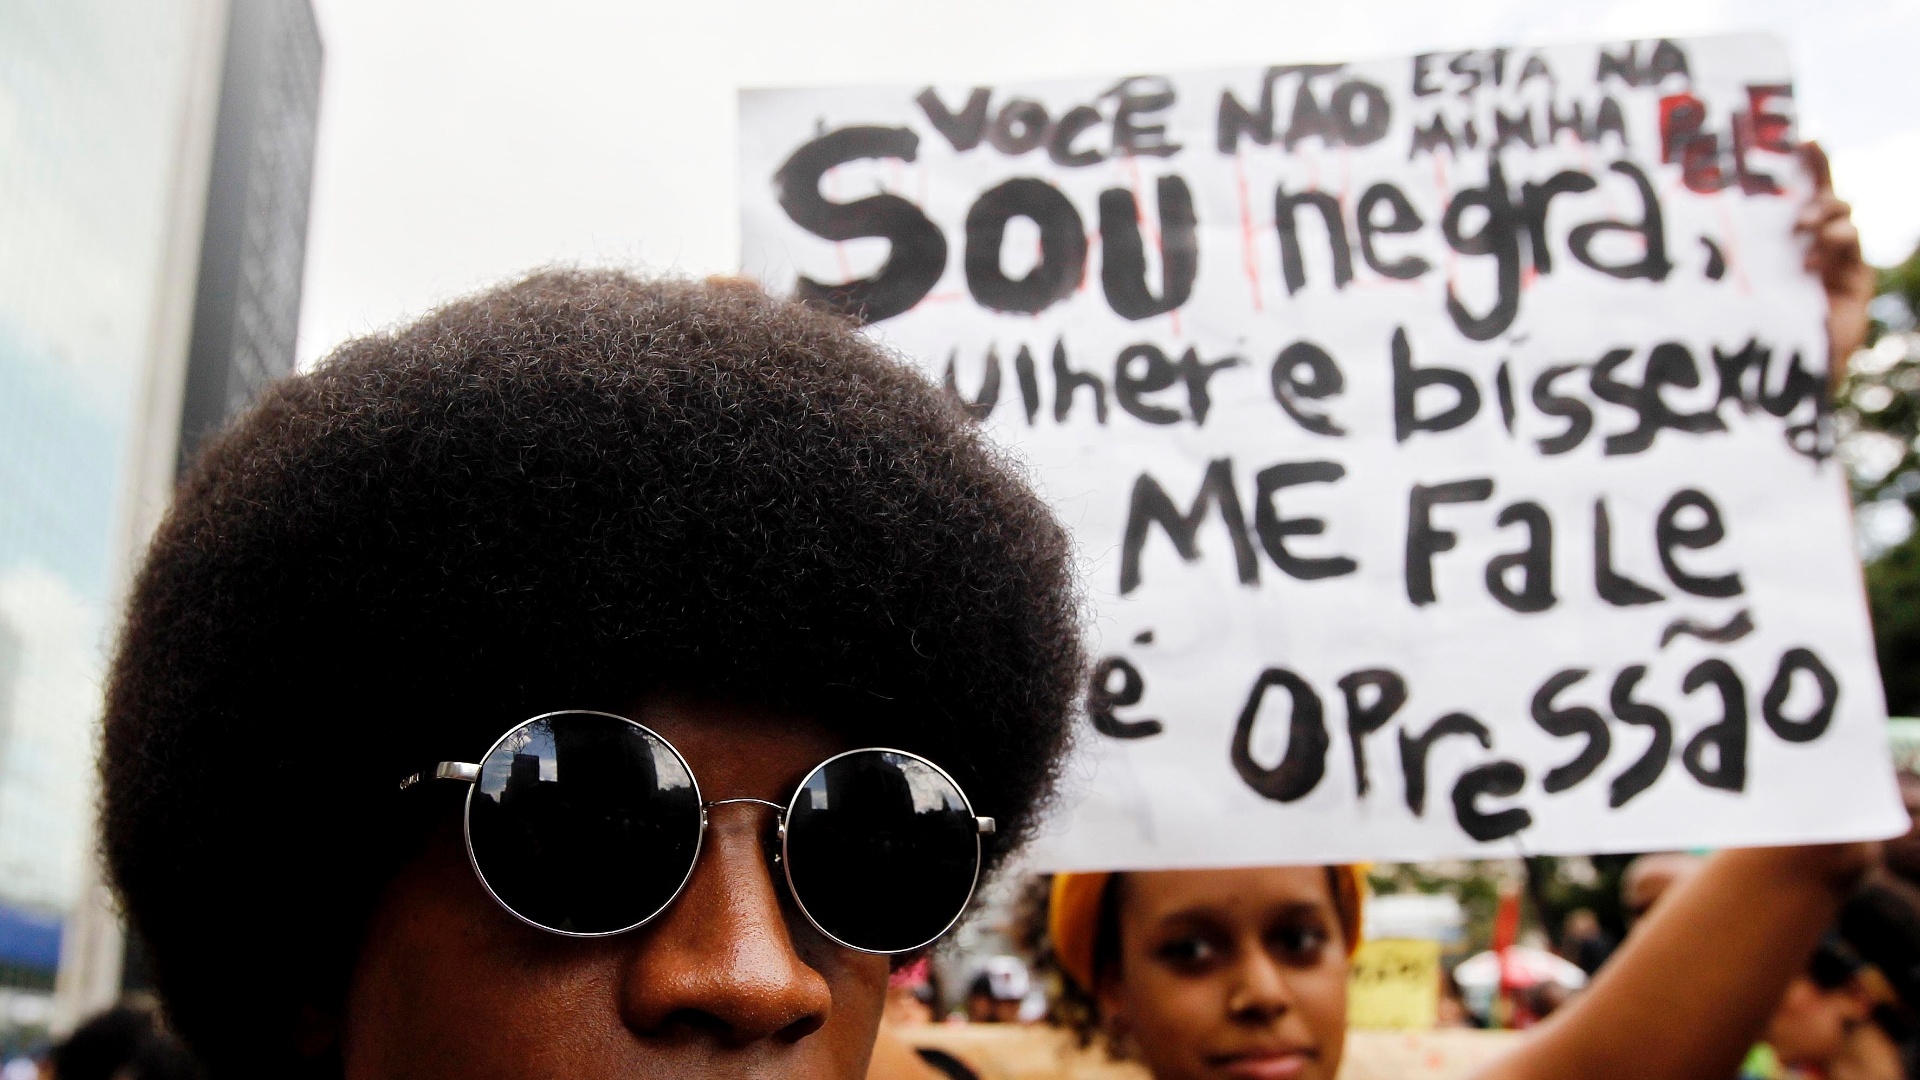 Manifestantes carregam cartazes durante a Marcha da Consciência Negra em 2013. - Reinaldo Canato/UOL